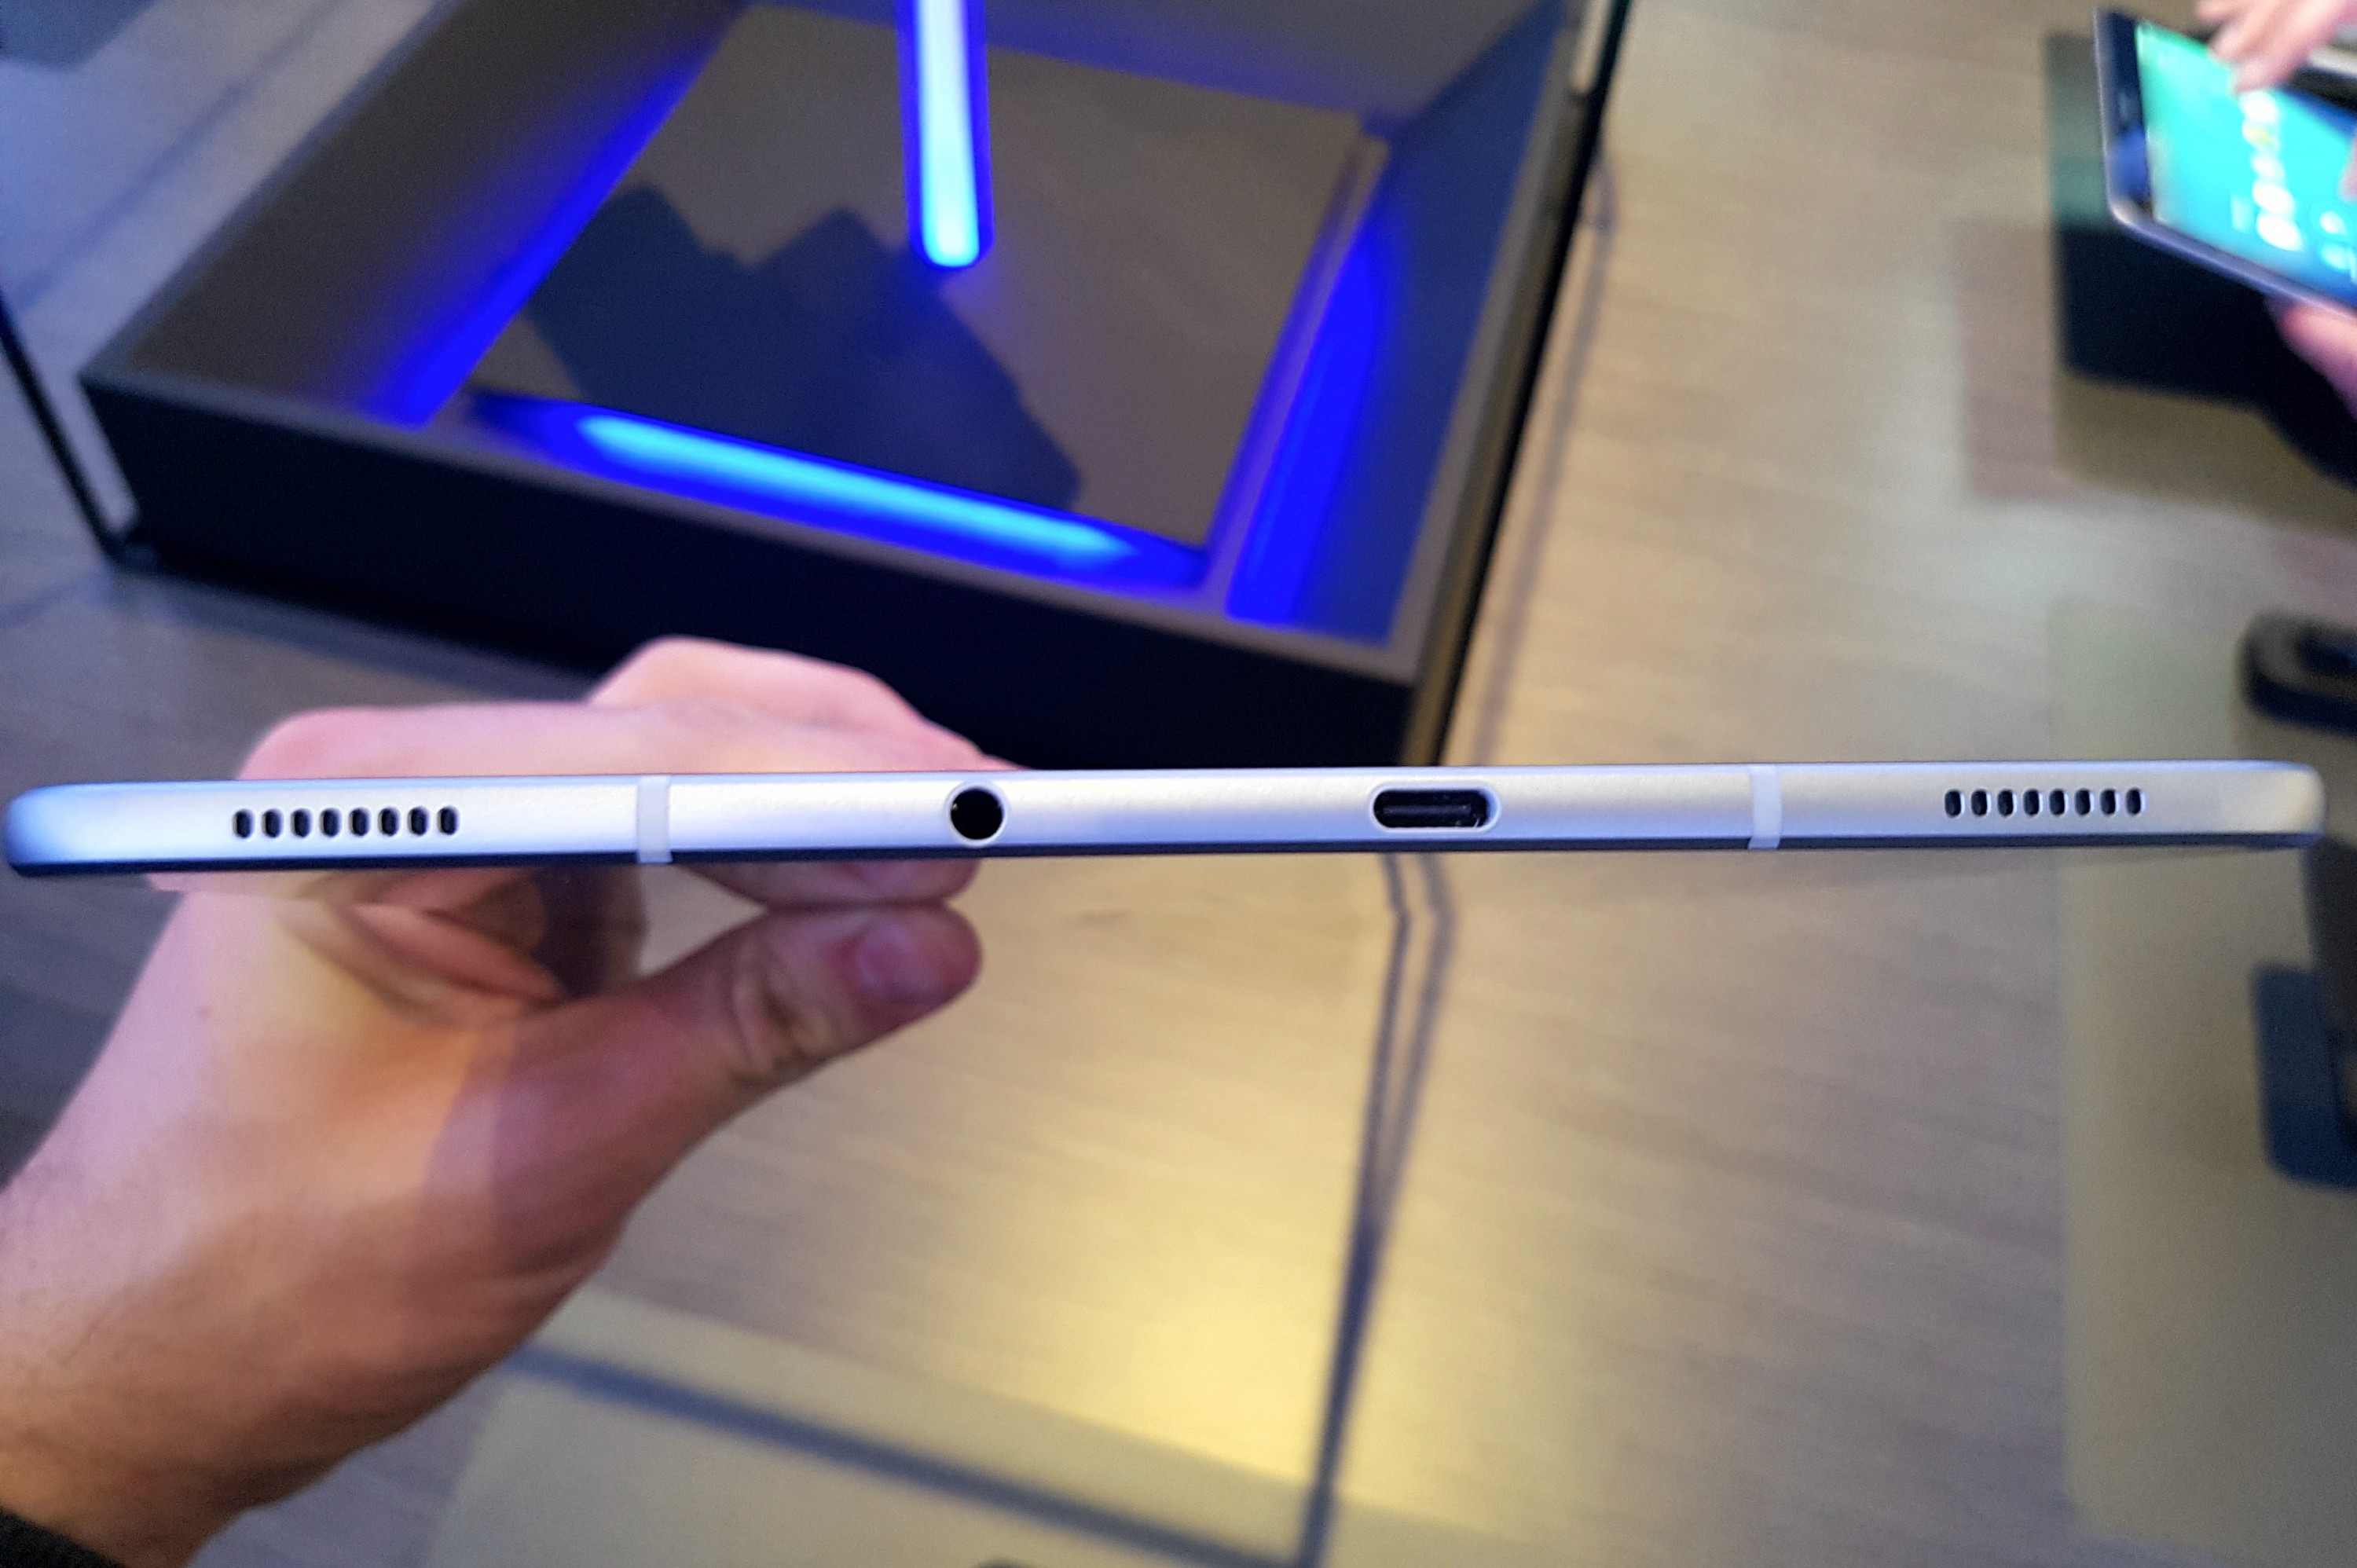 Первый взгляд на планшет Samsung Galaxy Tab S3